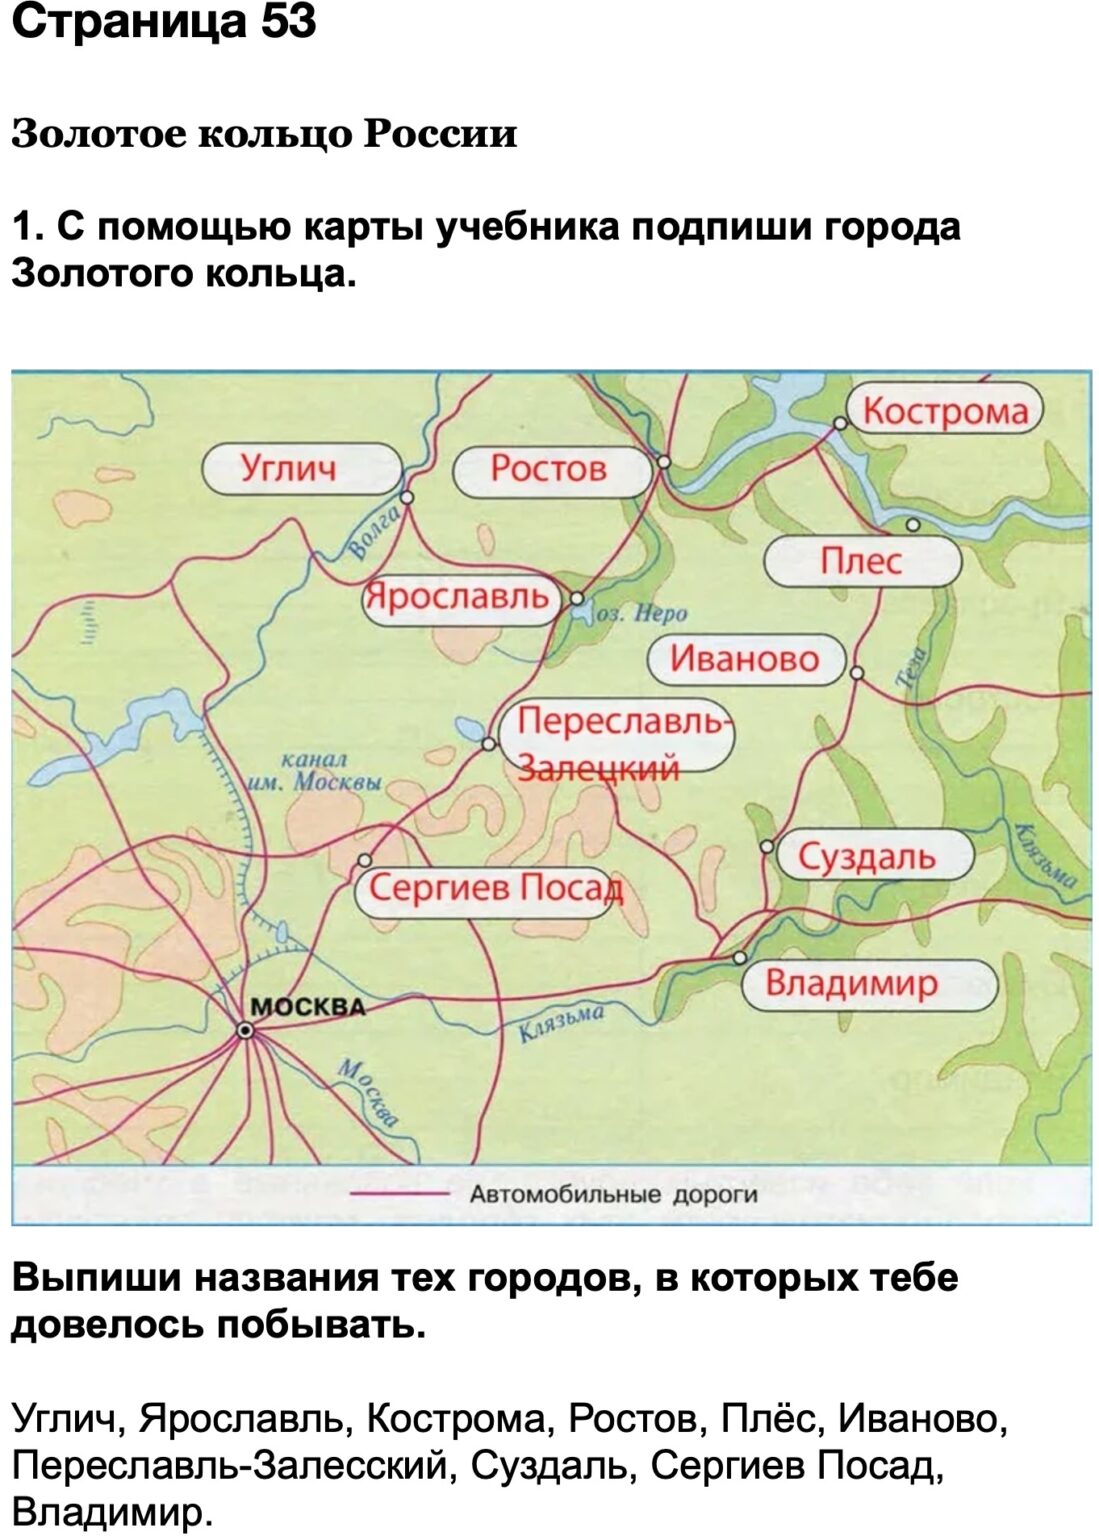 Подпиши на карте города золотого кольца России